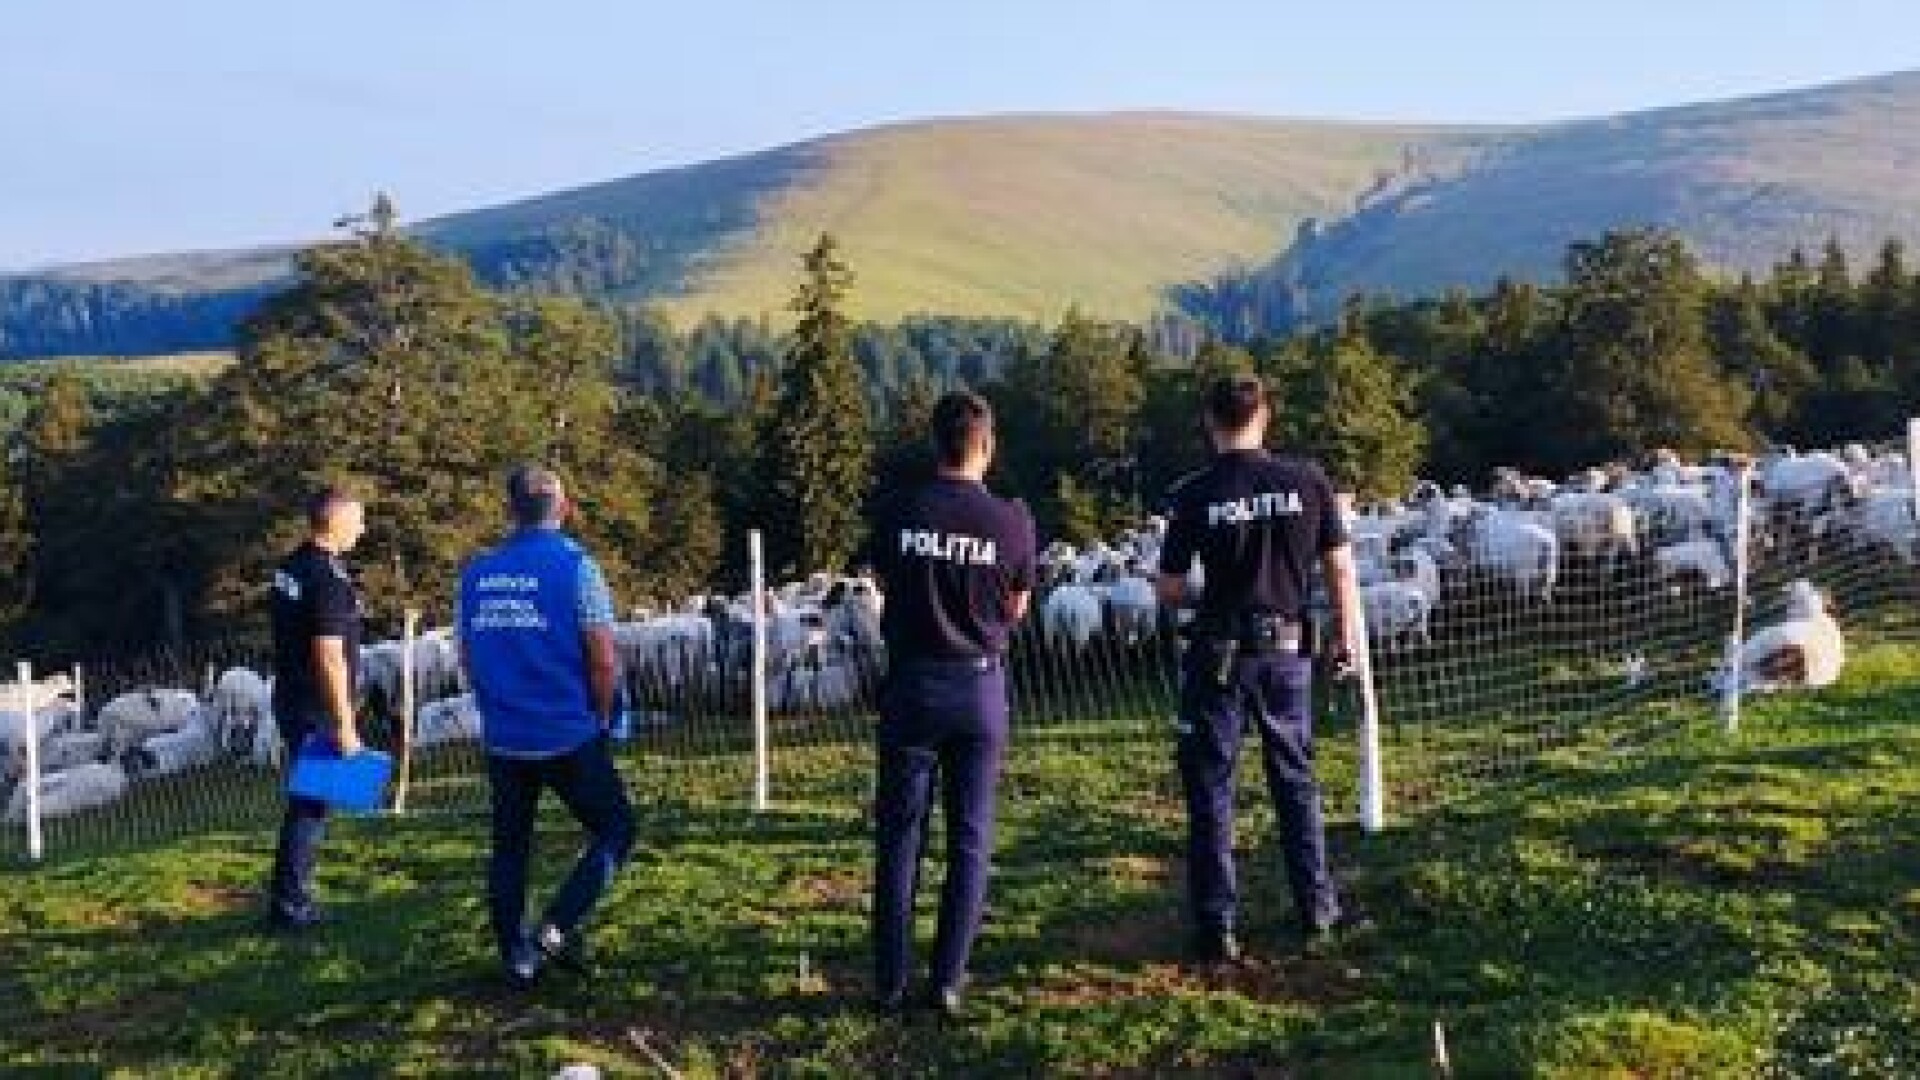 Polițiștii au verificat toate stânele din Gorj și au amendat ciobanii care nu ofereau condiții bune pentru câini